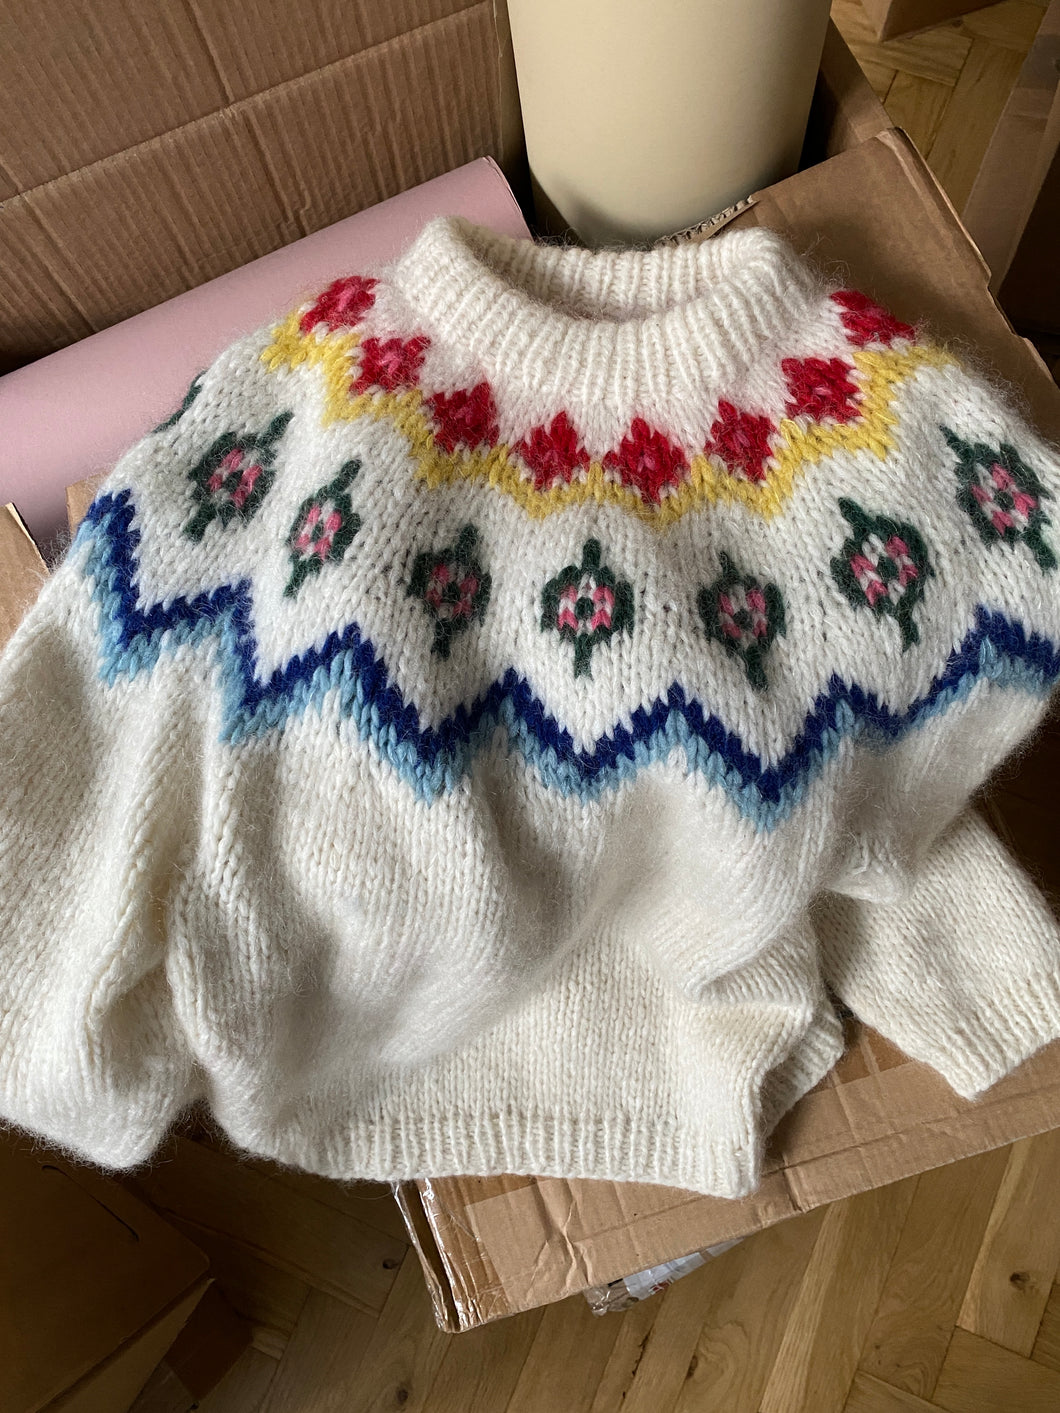 Deima's scandi sweater - knitting pattern (dansk)